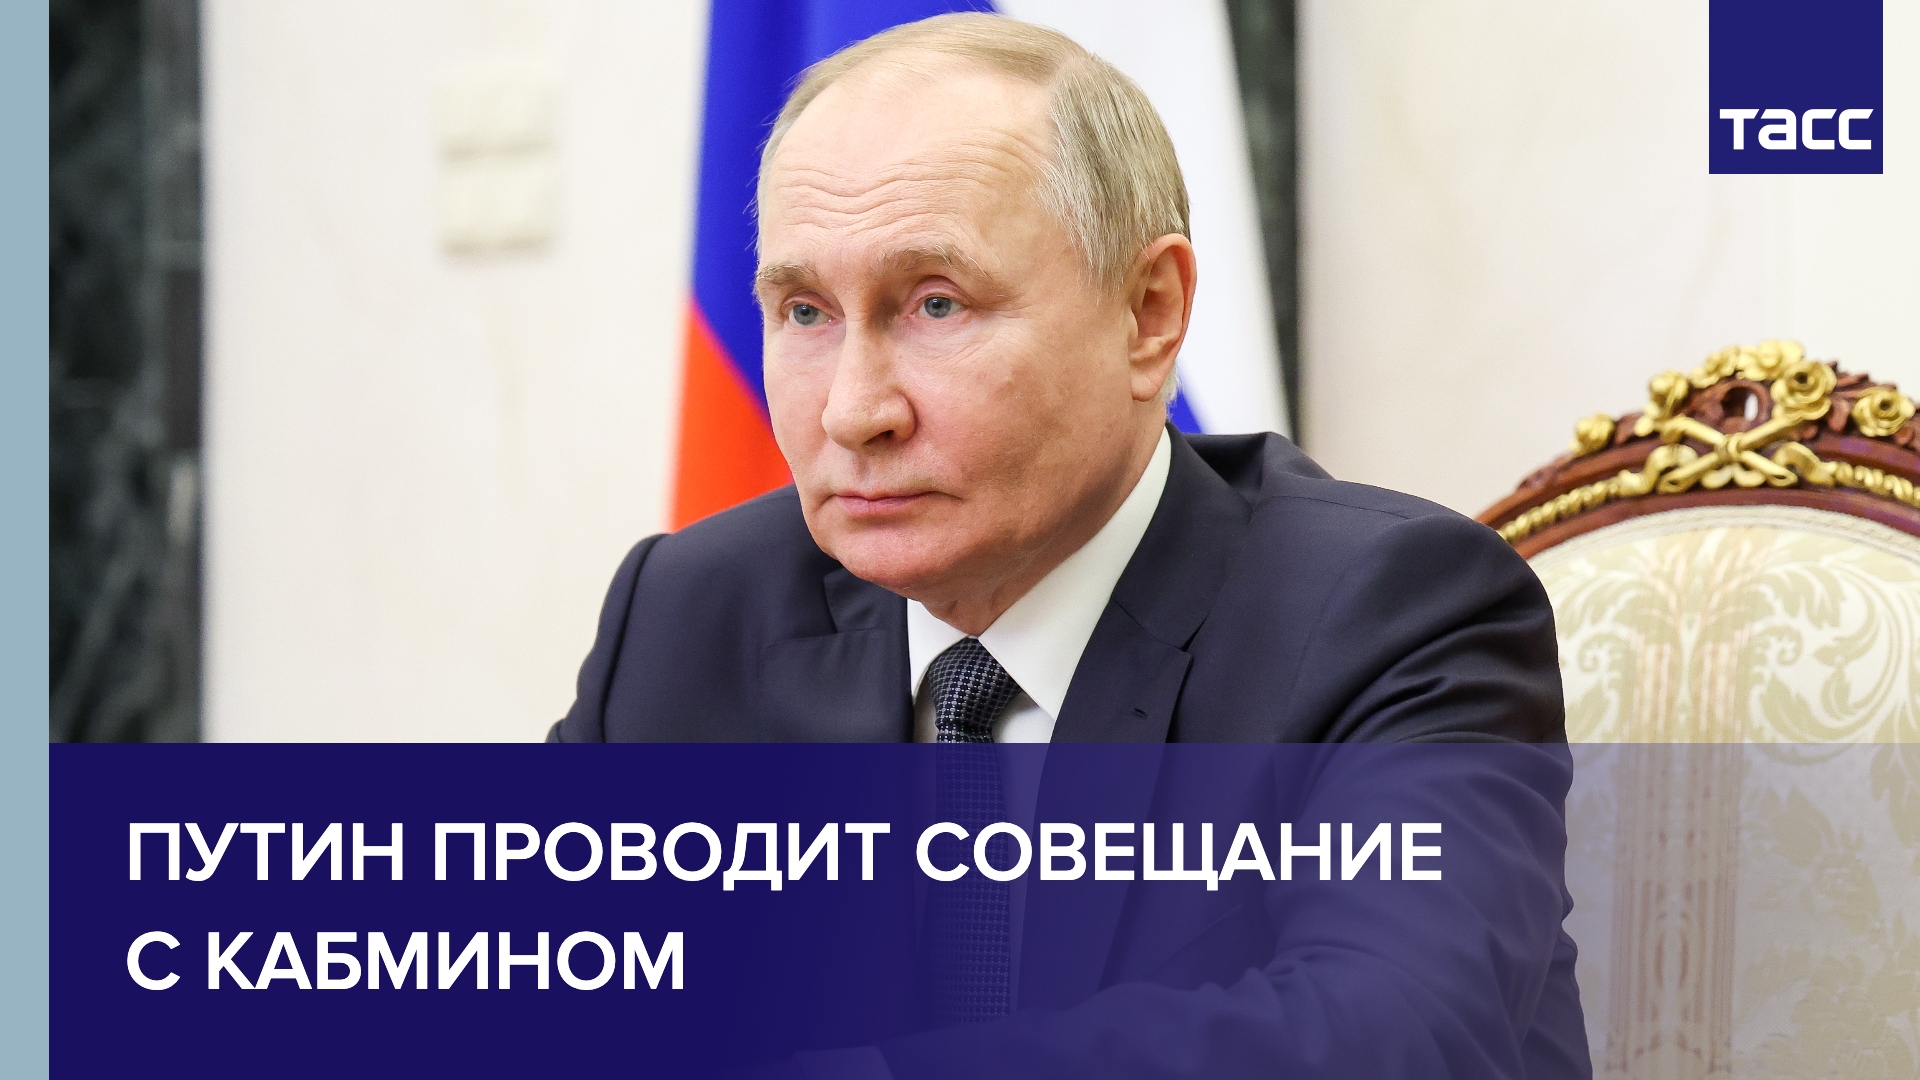 Путин проводит совещание с кабмином по видеосвязи из Петербурга